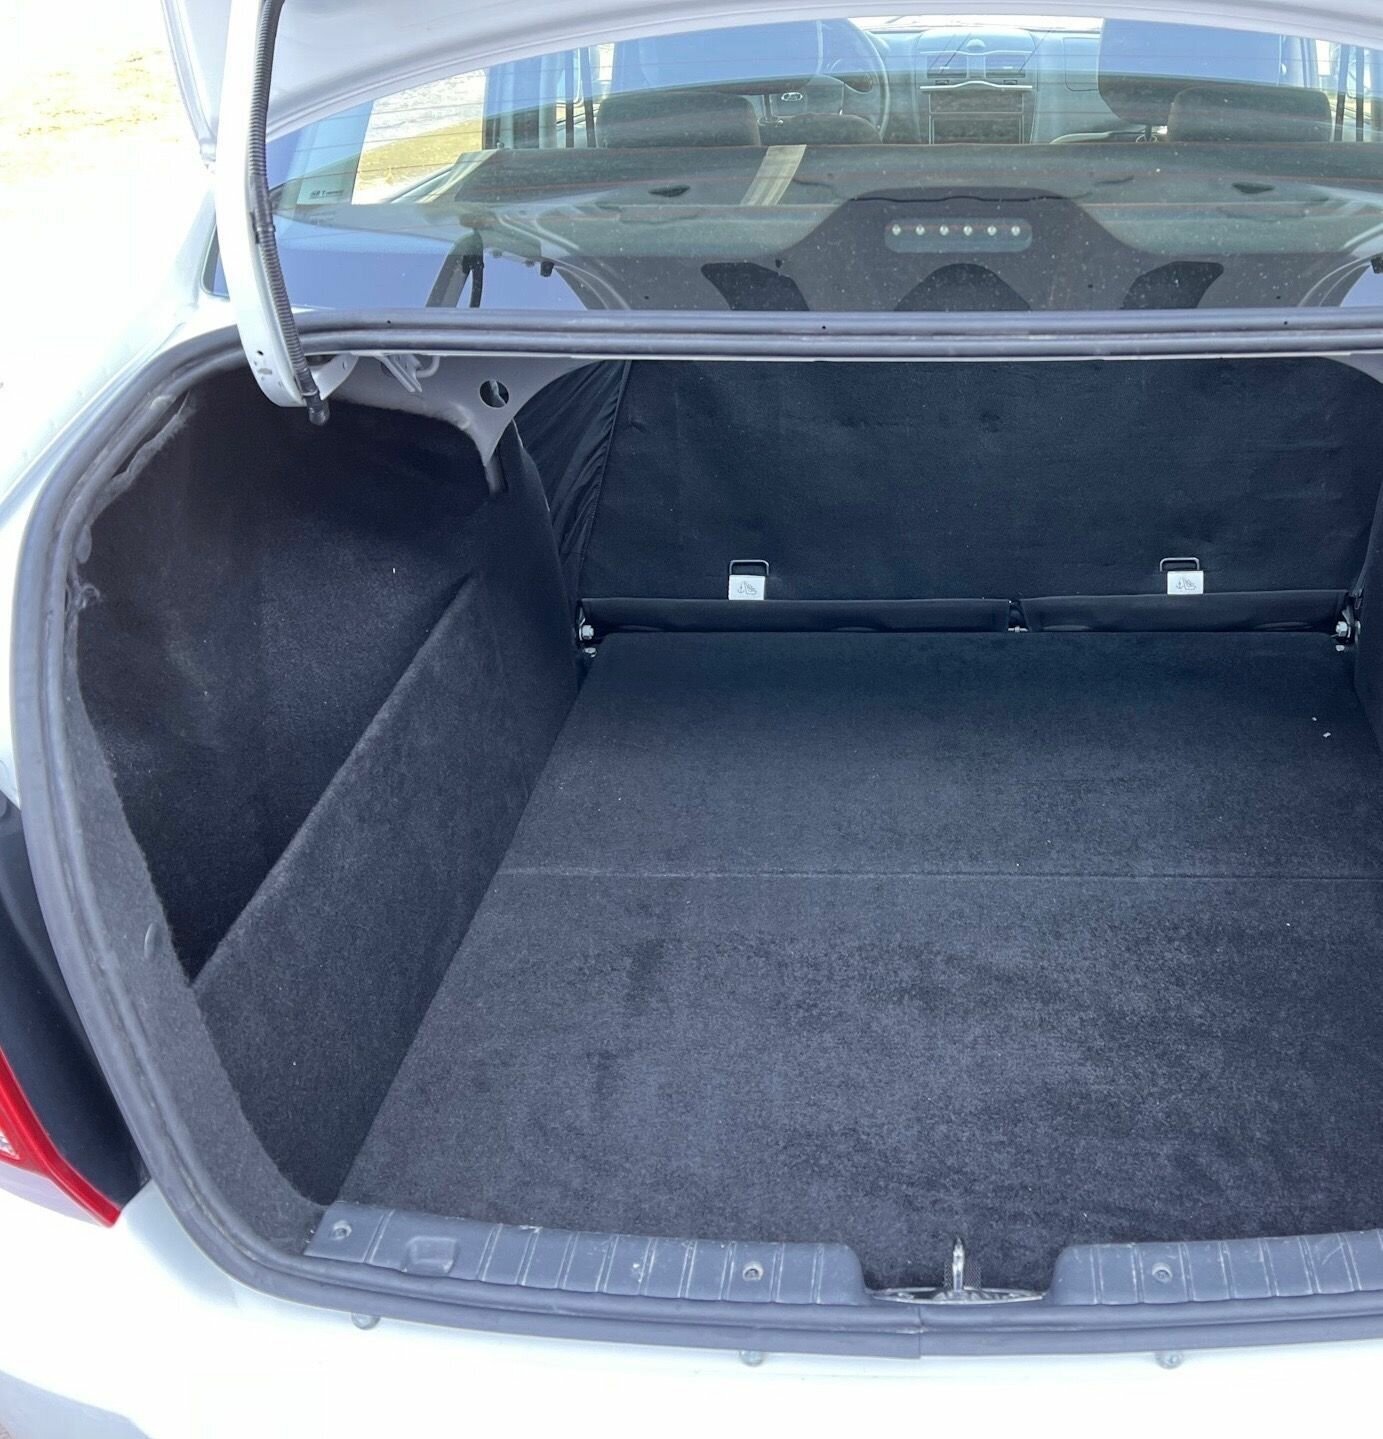 Органайзер в багажник для автомобиля Lada Granta Sedan. Багажные карманы для Лада Гранта Седан. Одна панель только в левую нишу